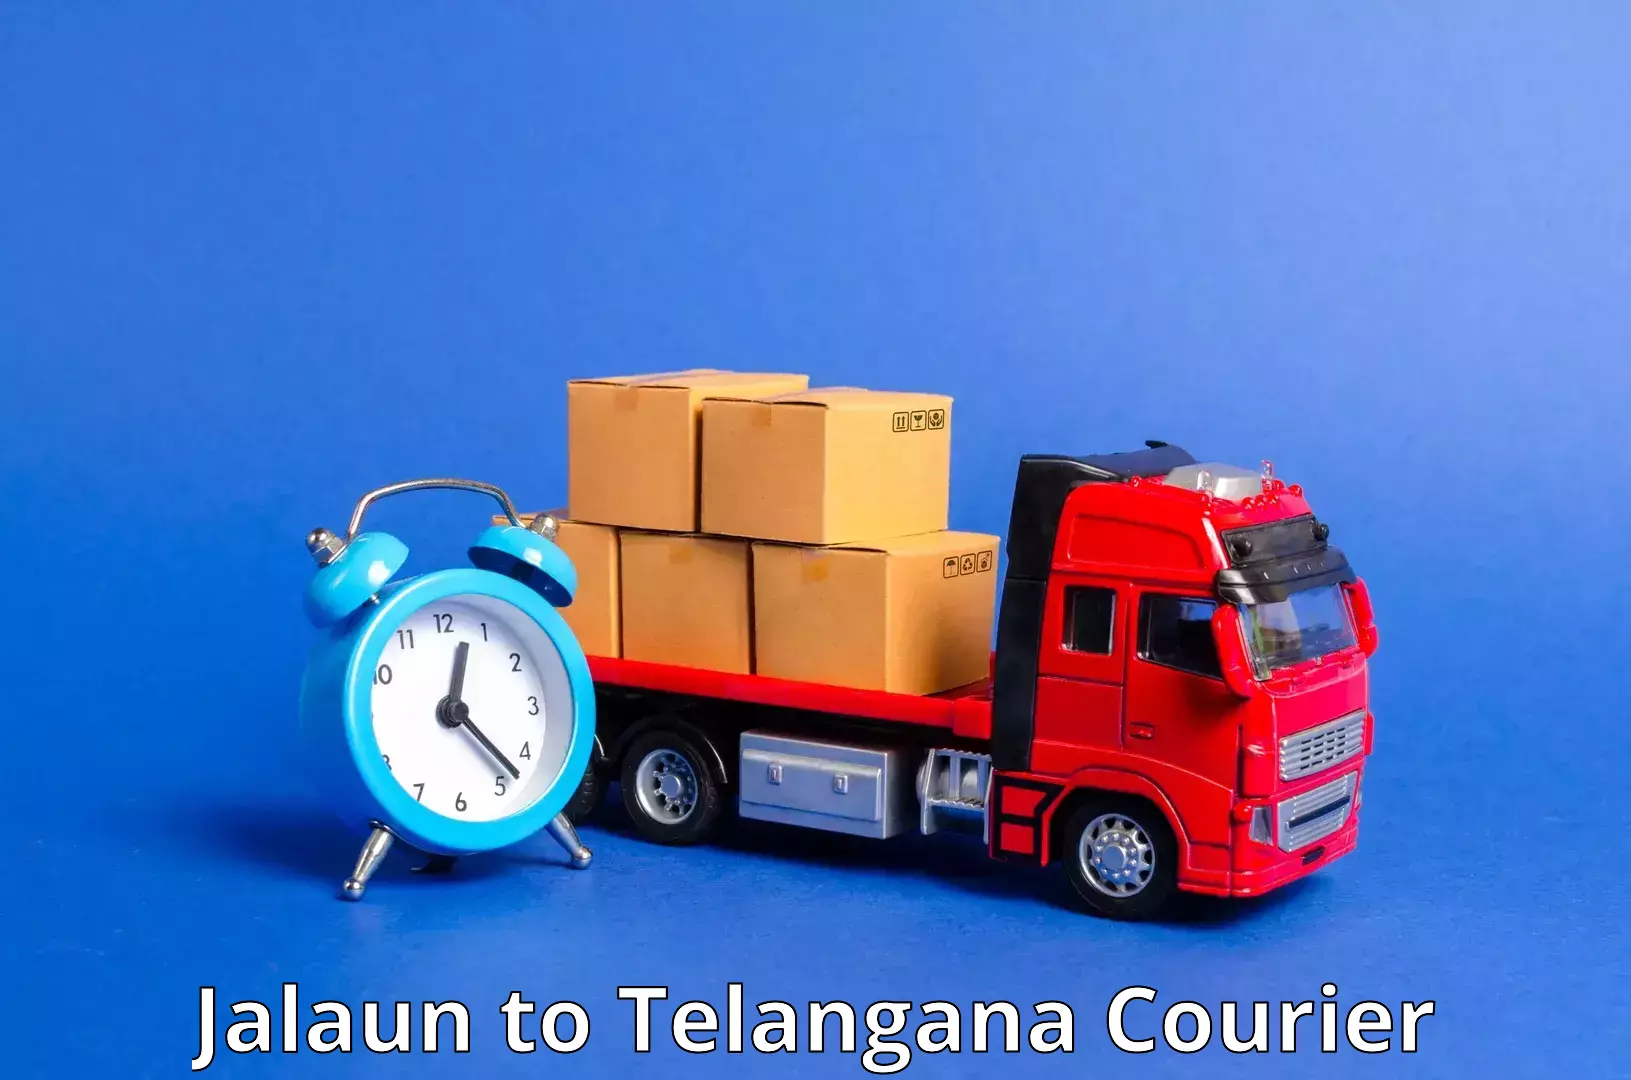 High-priority parcel service Jalaun to Telangana